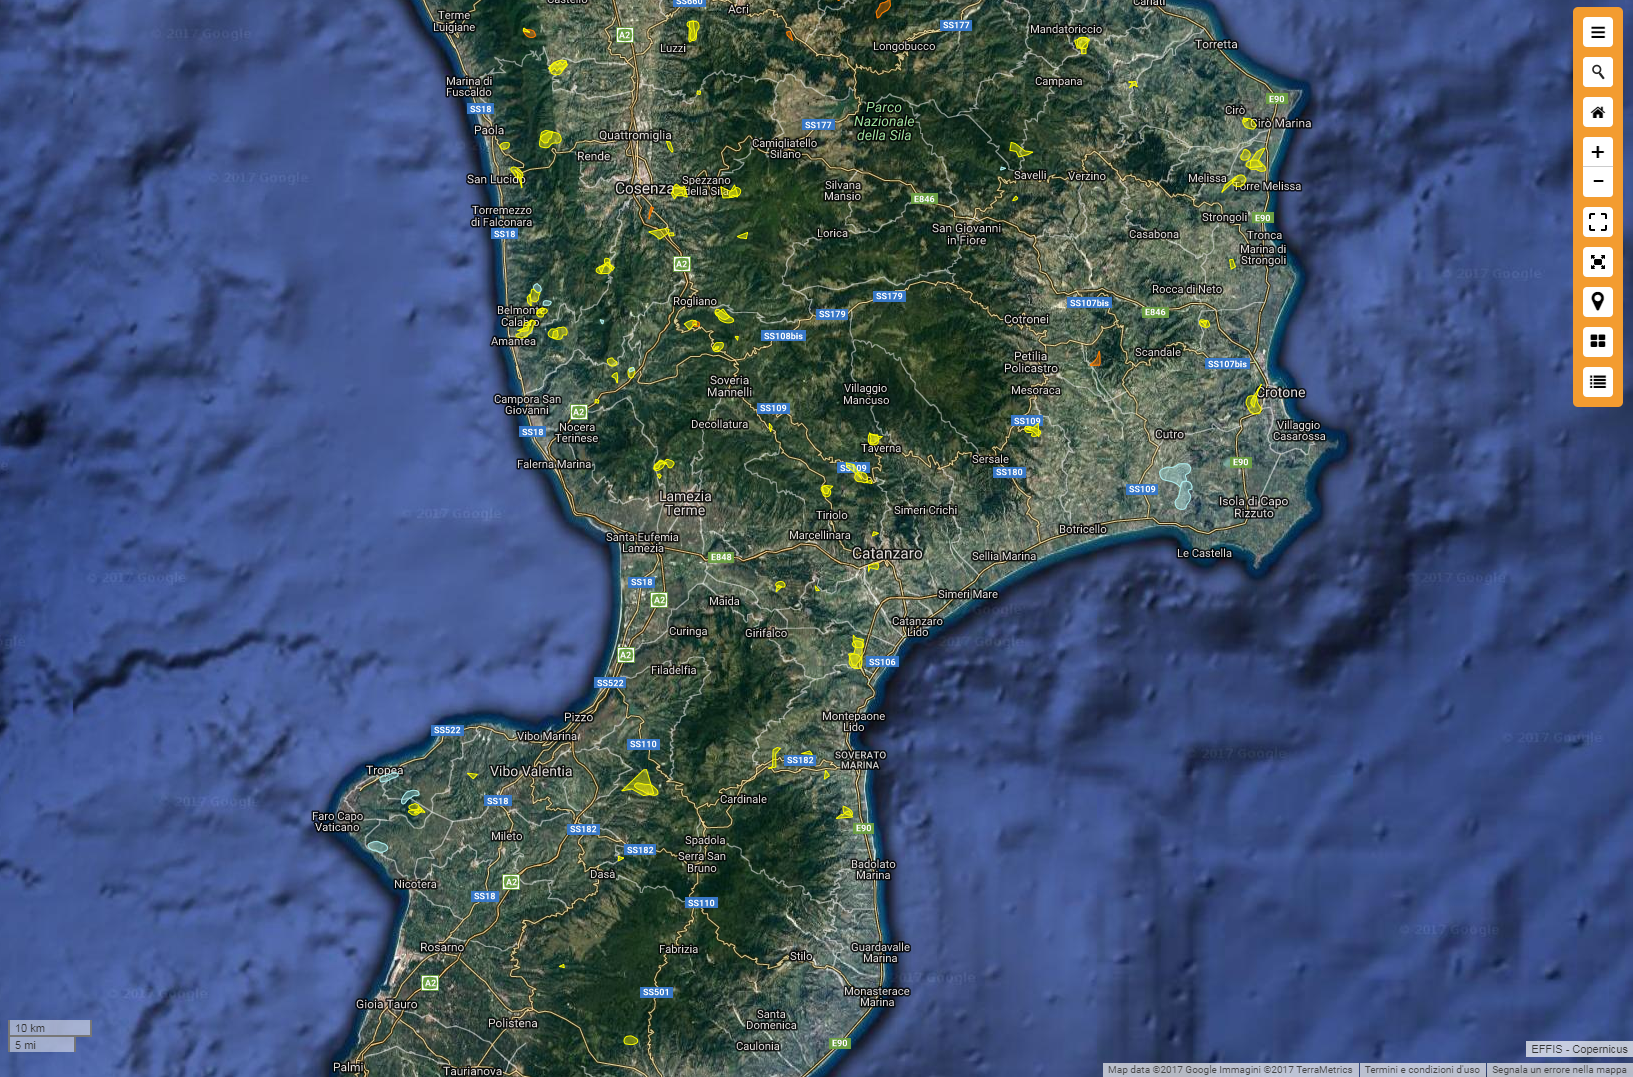 Migliaia di ettari interessati da incendi in Calabria